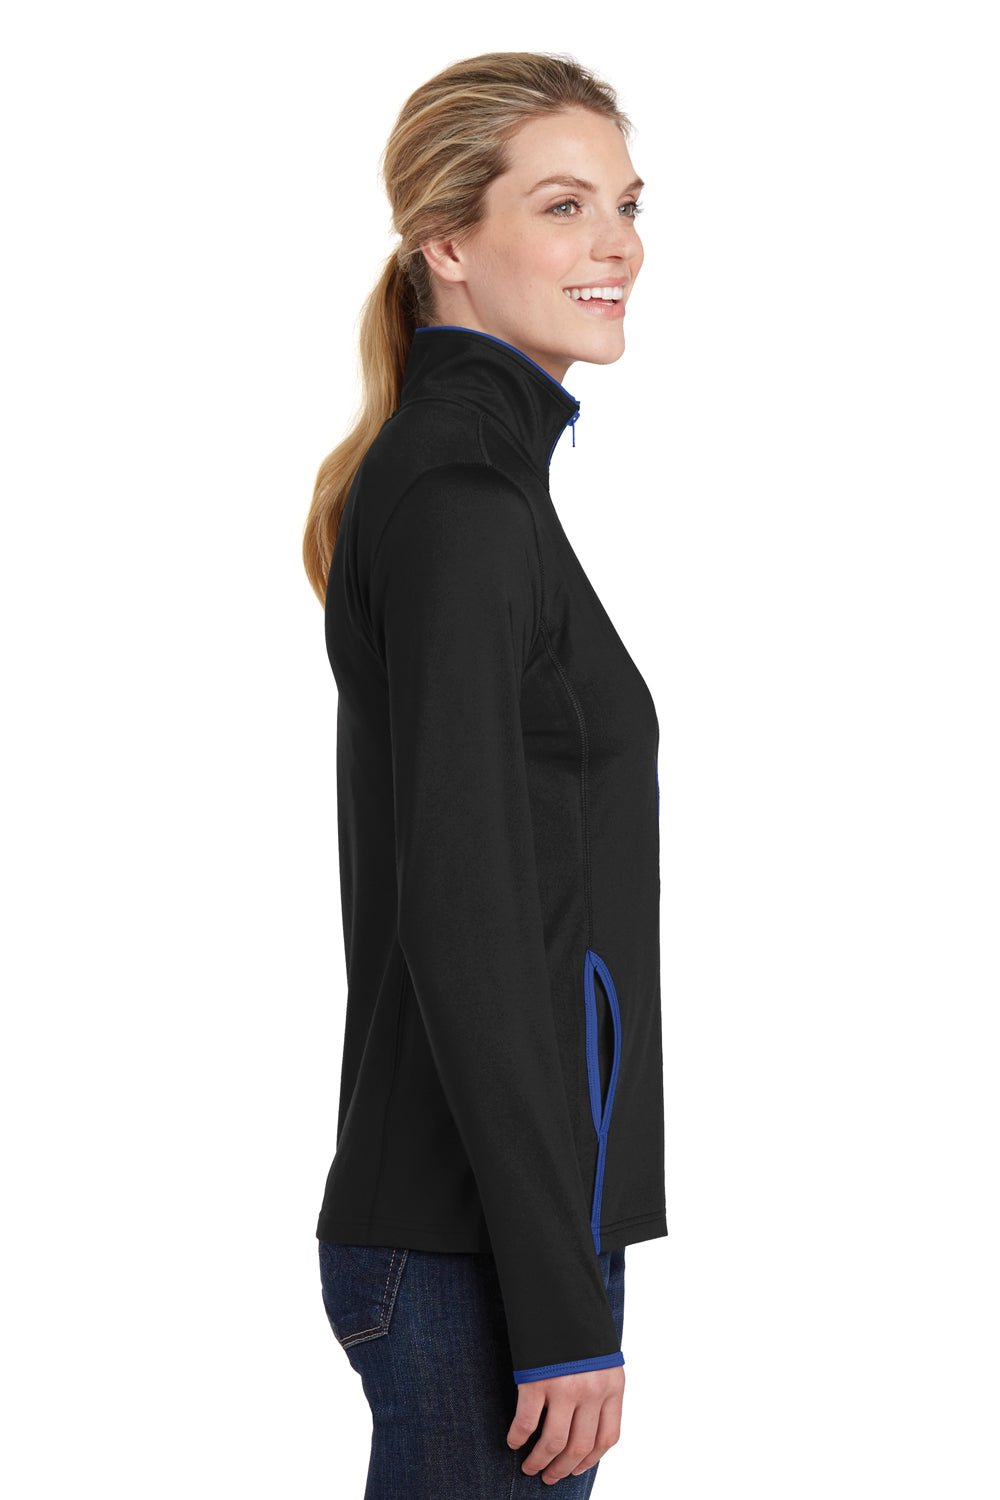 Sport-Tek LST853 Womens Sport-Wick Moisture Wicking Full Zip Jacket Black/Royal Blue Side